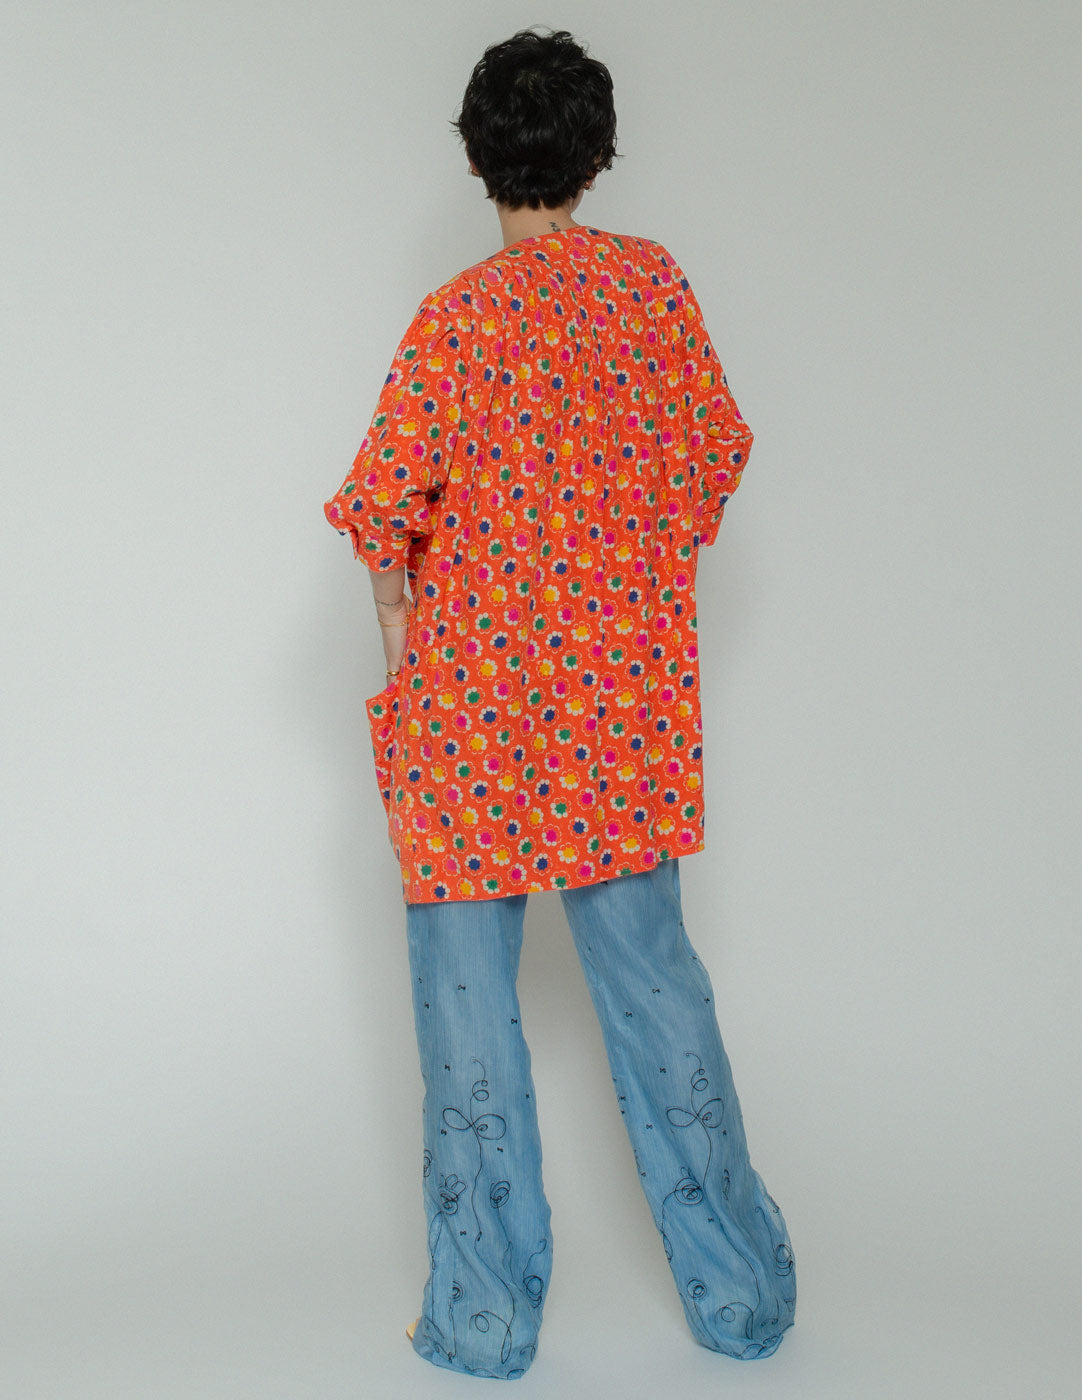 Emanuel Ungaro vintage orange patterned dress back